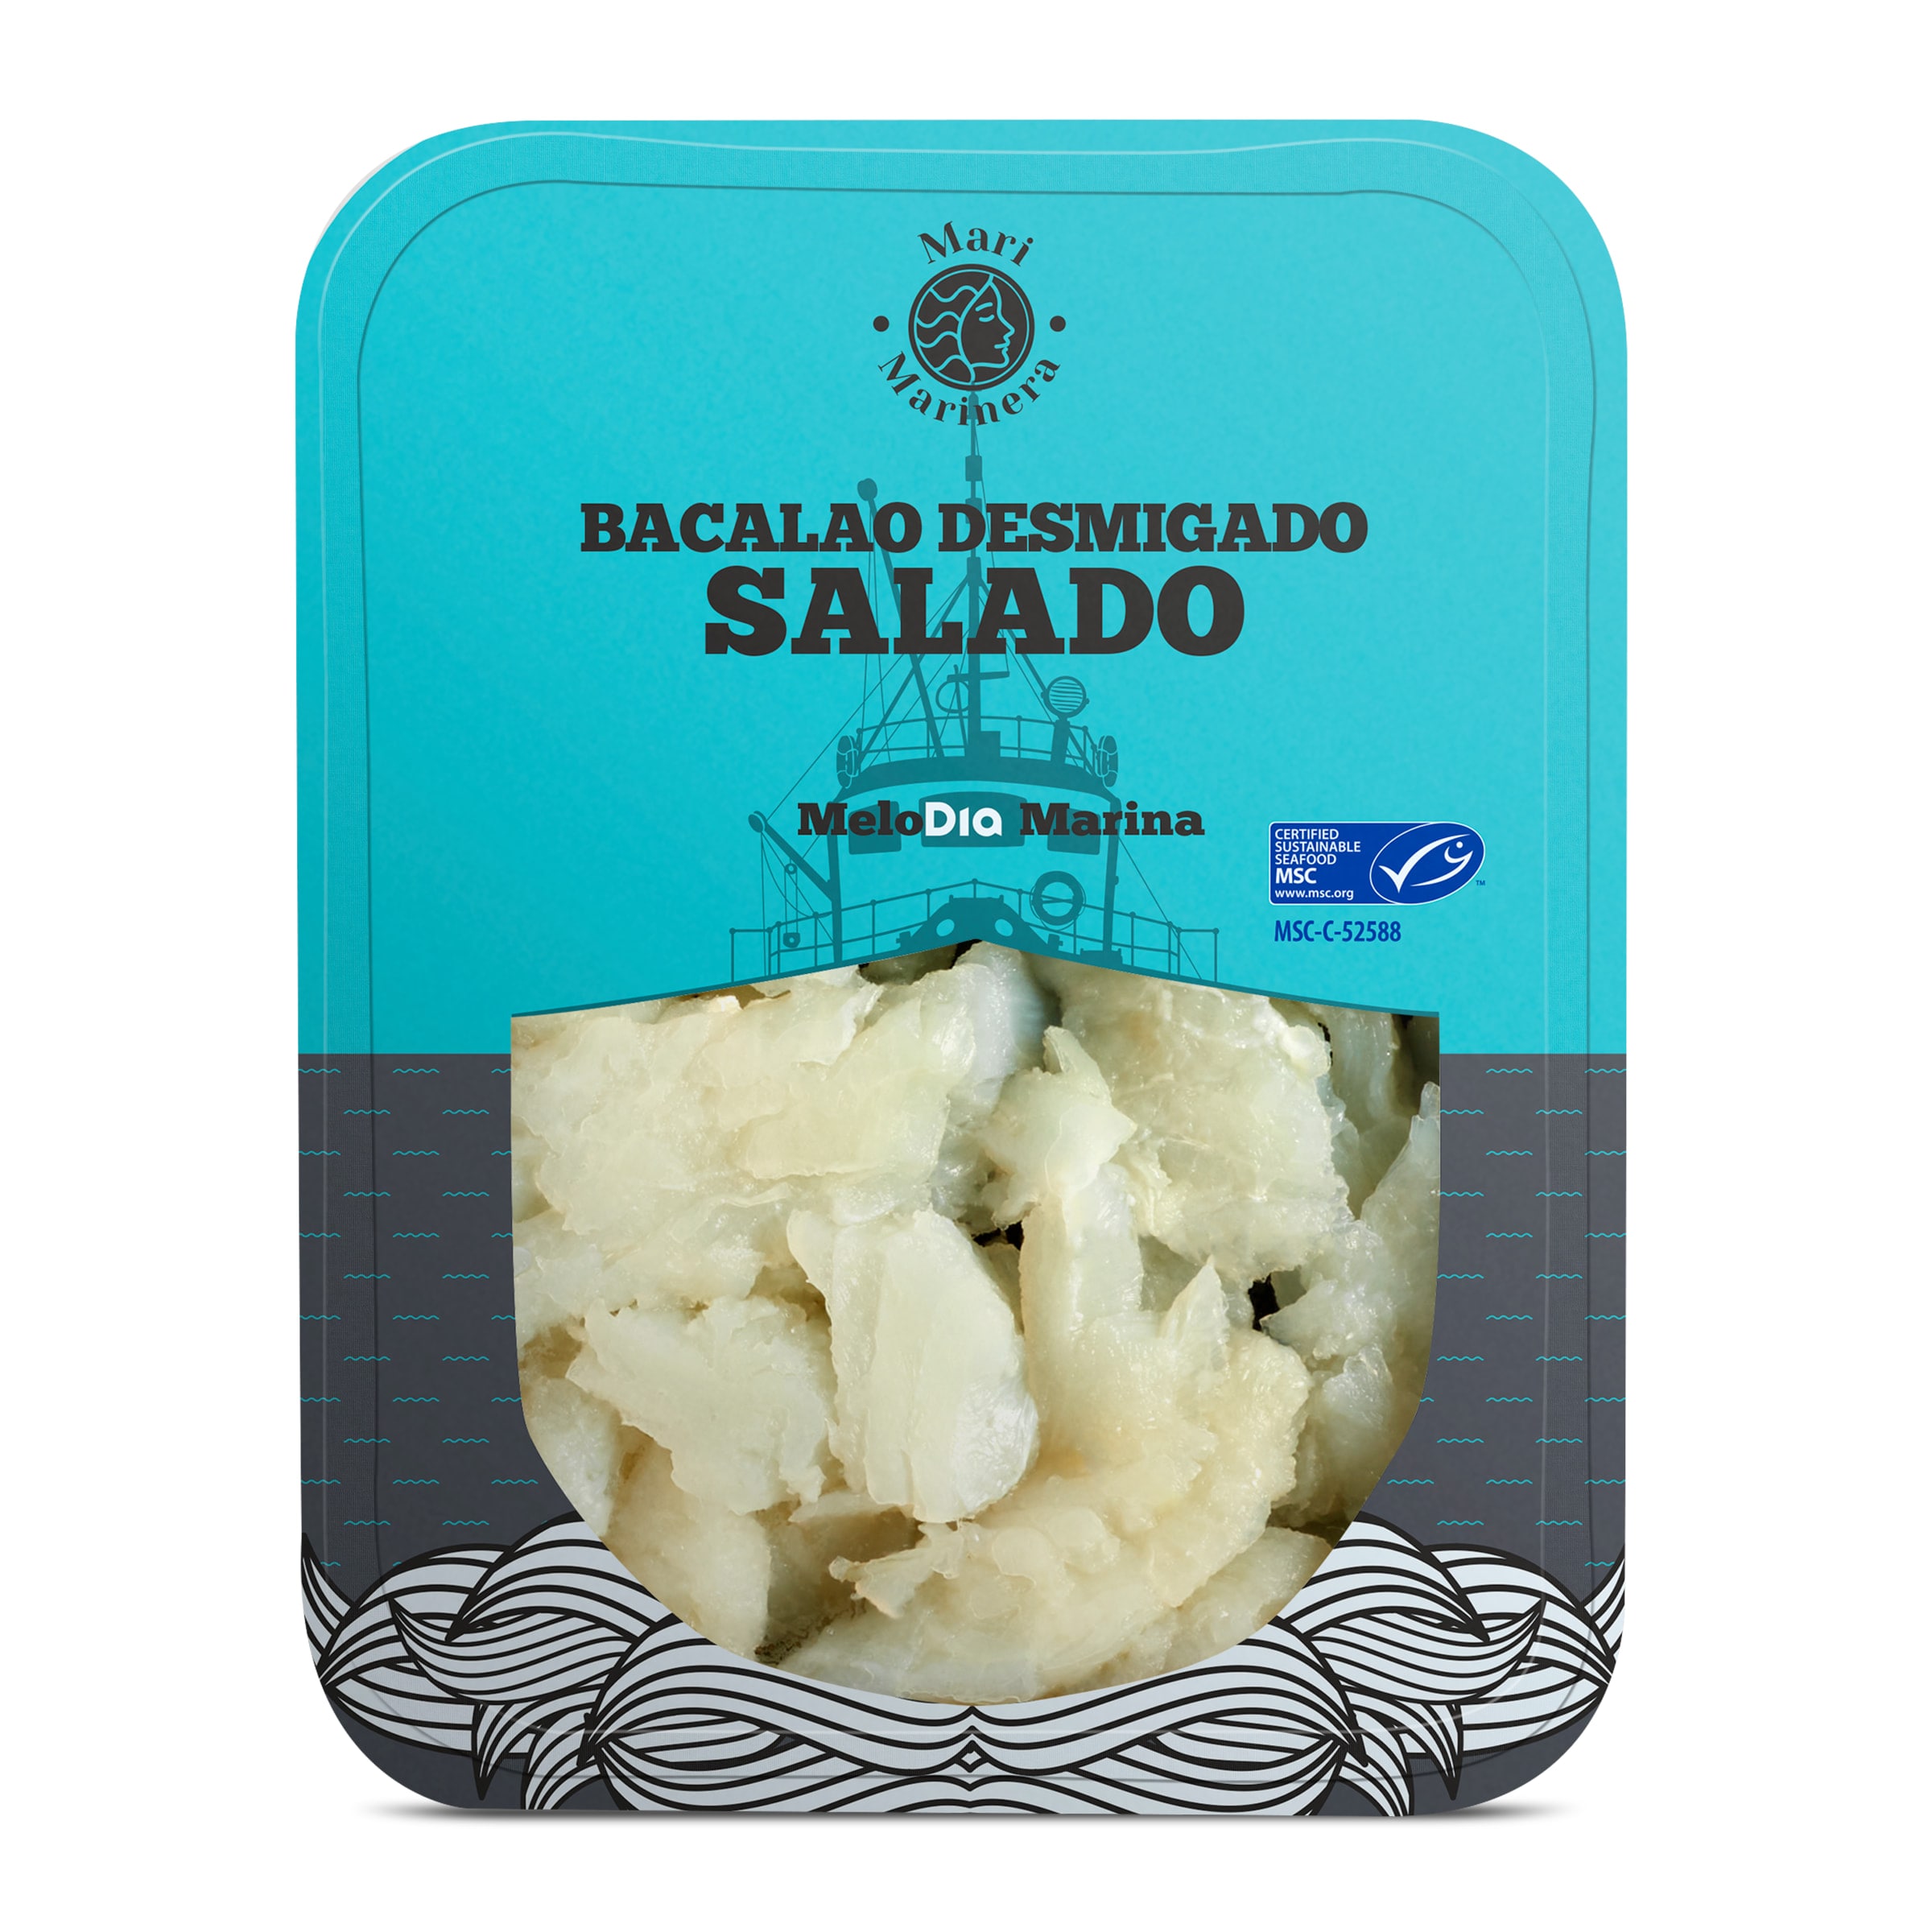 Bacalao desmigado salado MSC Mari Marinera bandeja 250 g - Supermercados DIA